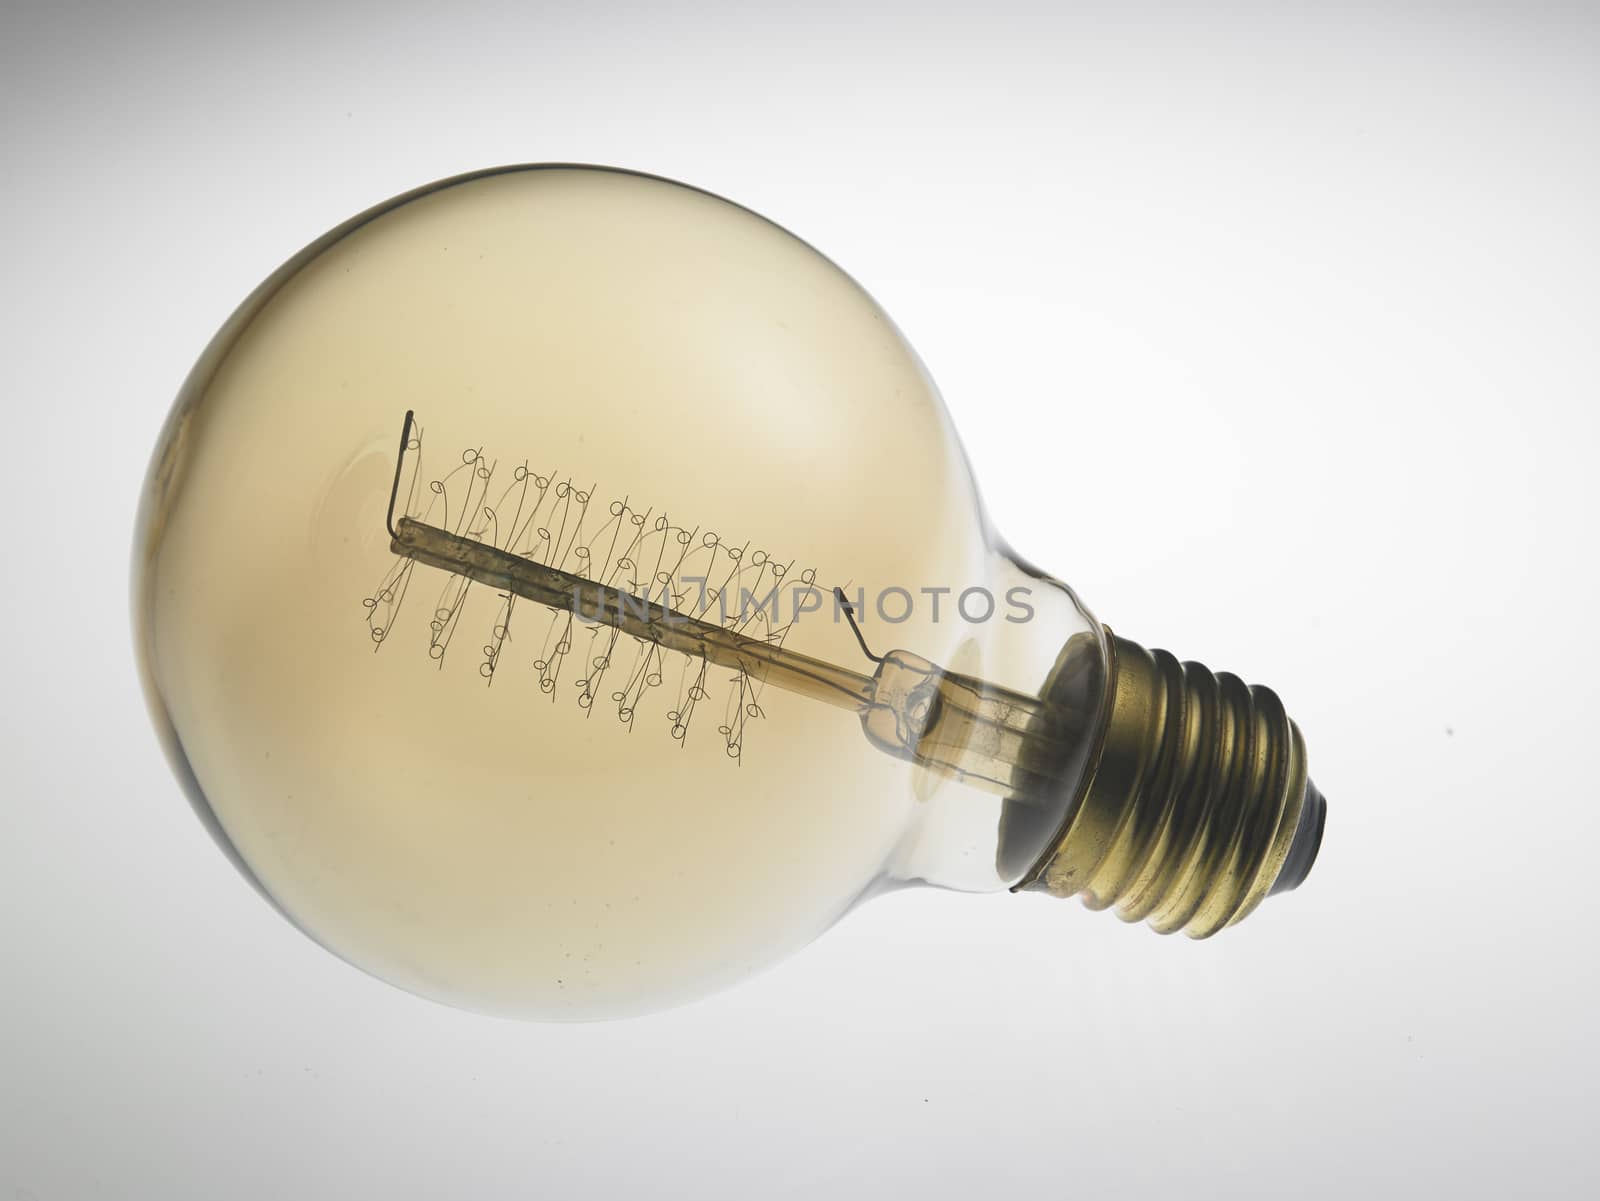 retro light bulb design on the white background